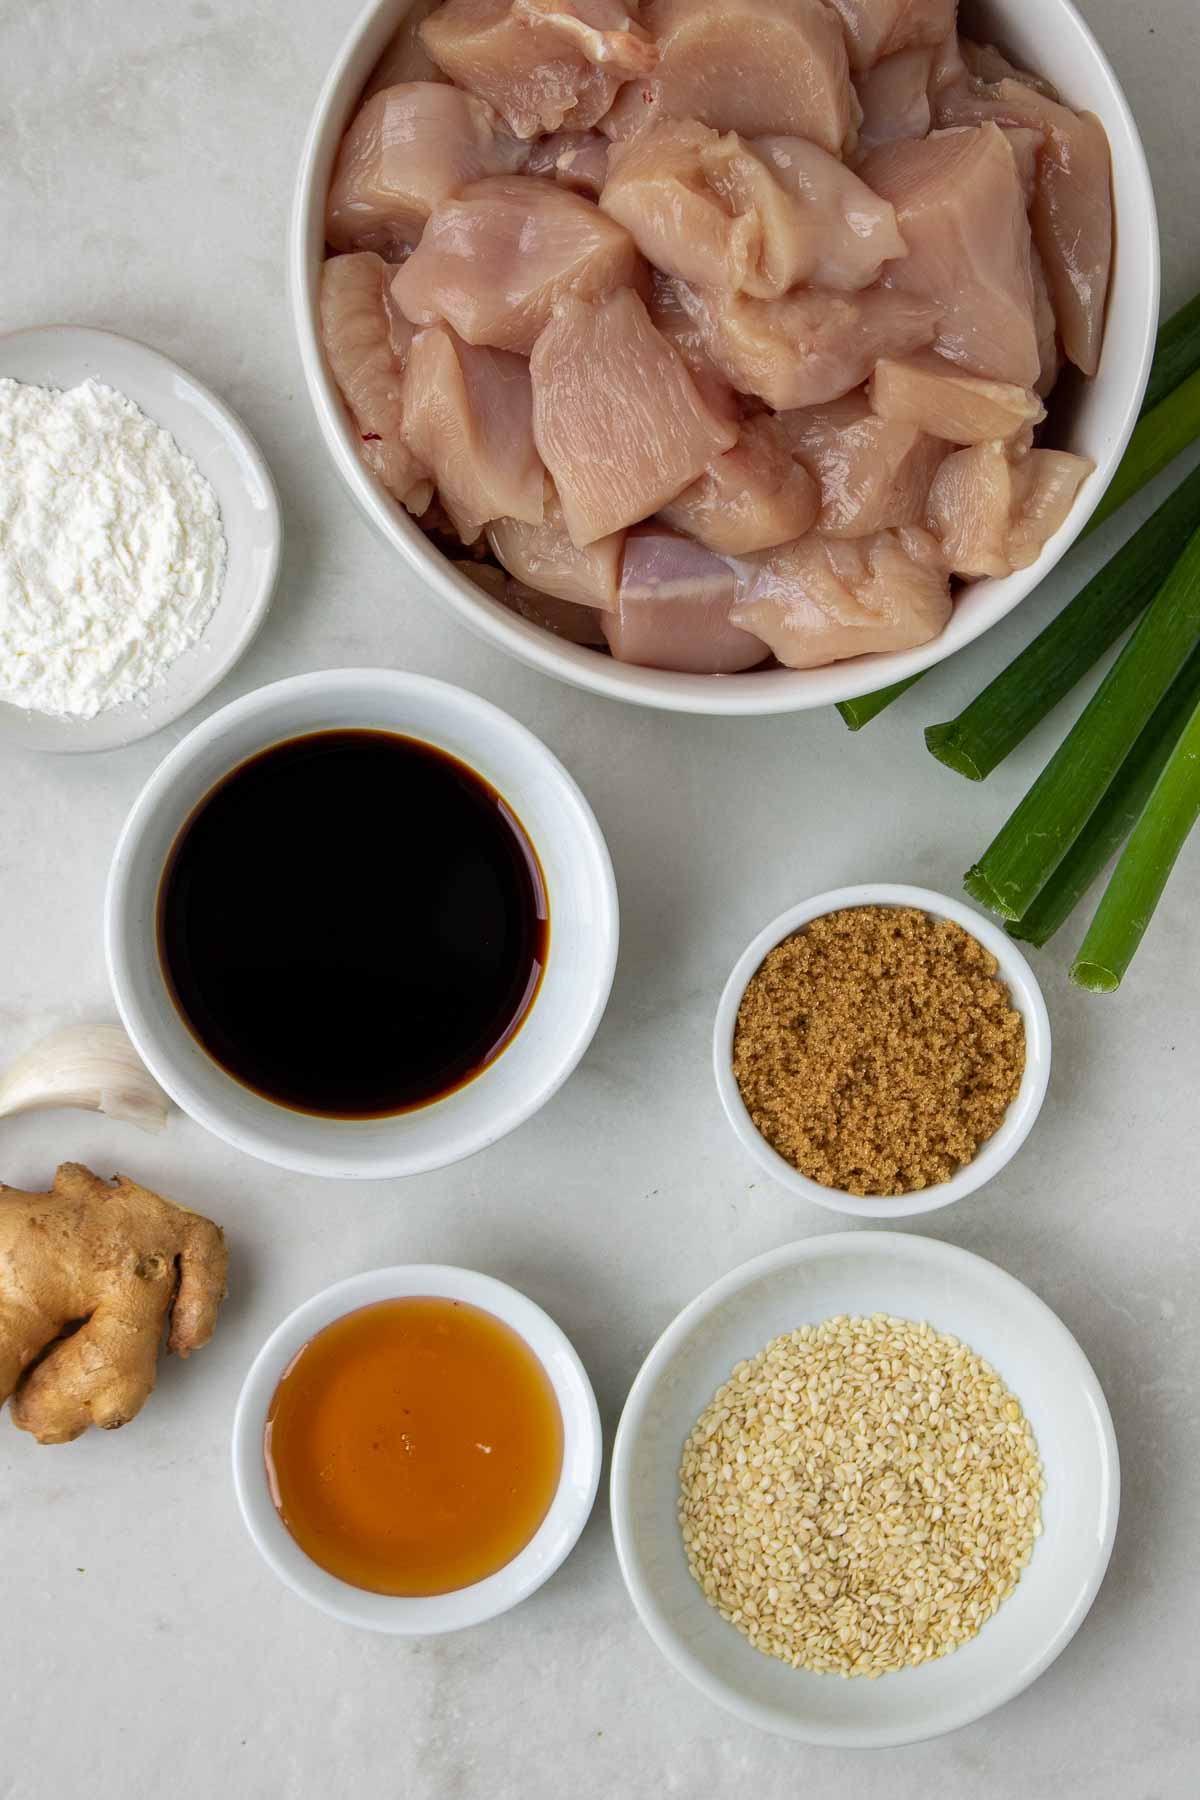 Ingrédients pour les brochettes de poulet teriyaki : poulet en dés, sauce soja, sucre brun, miel, gingembre, ail, fécule de maïs, graines de sésame et oignons verts.